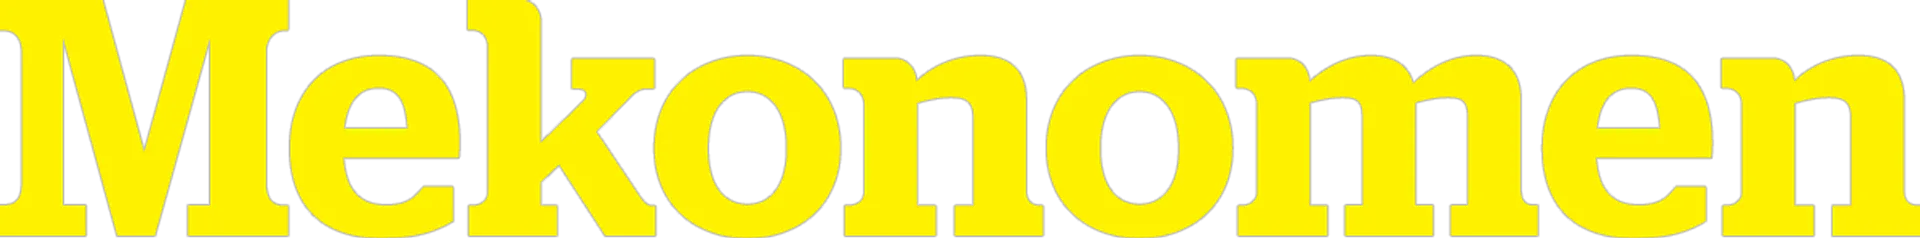 MEKONOMEN logo